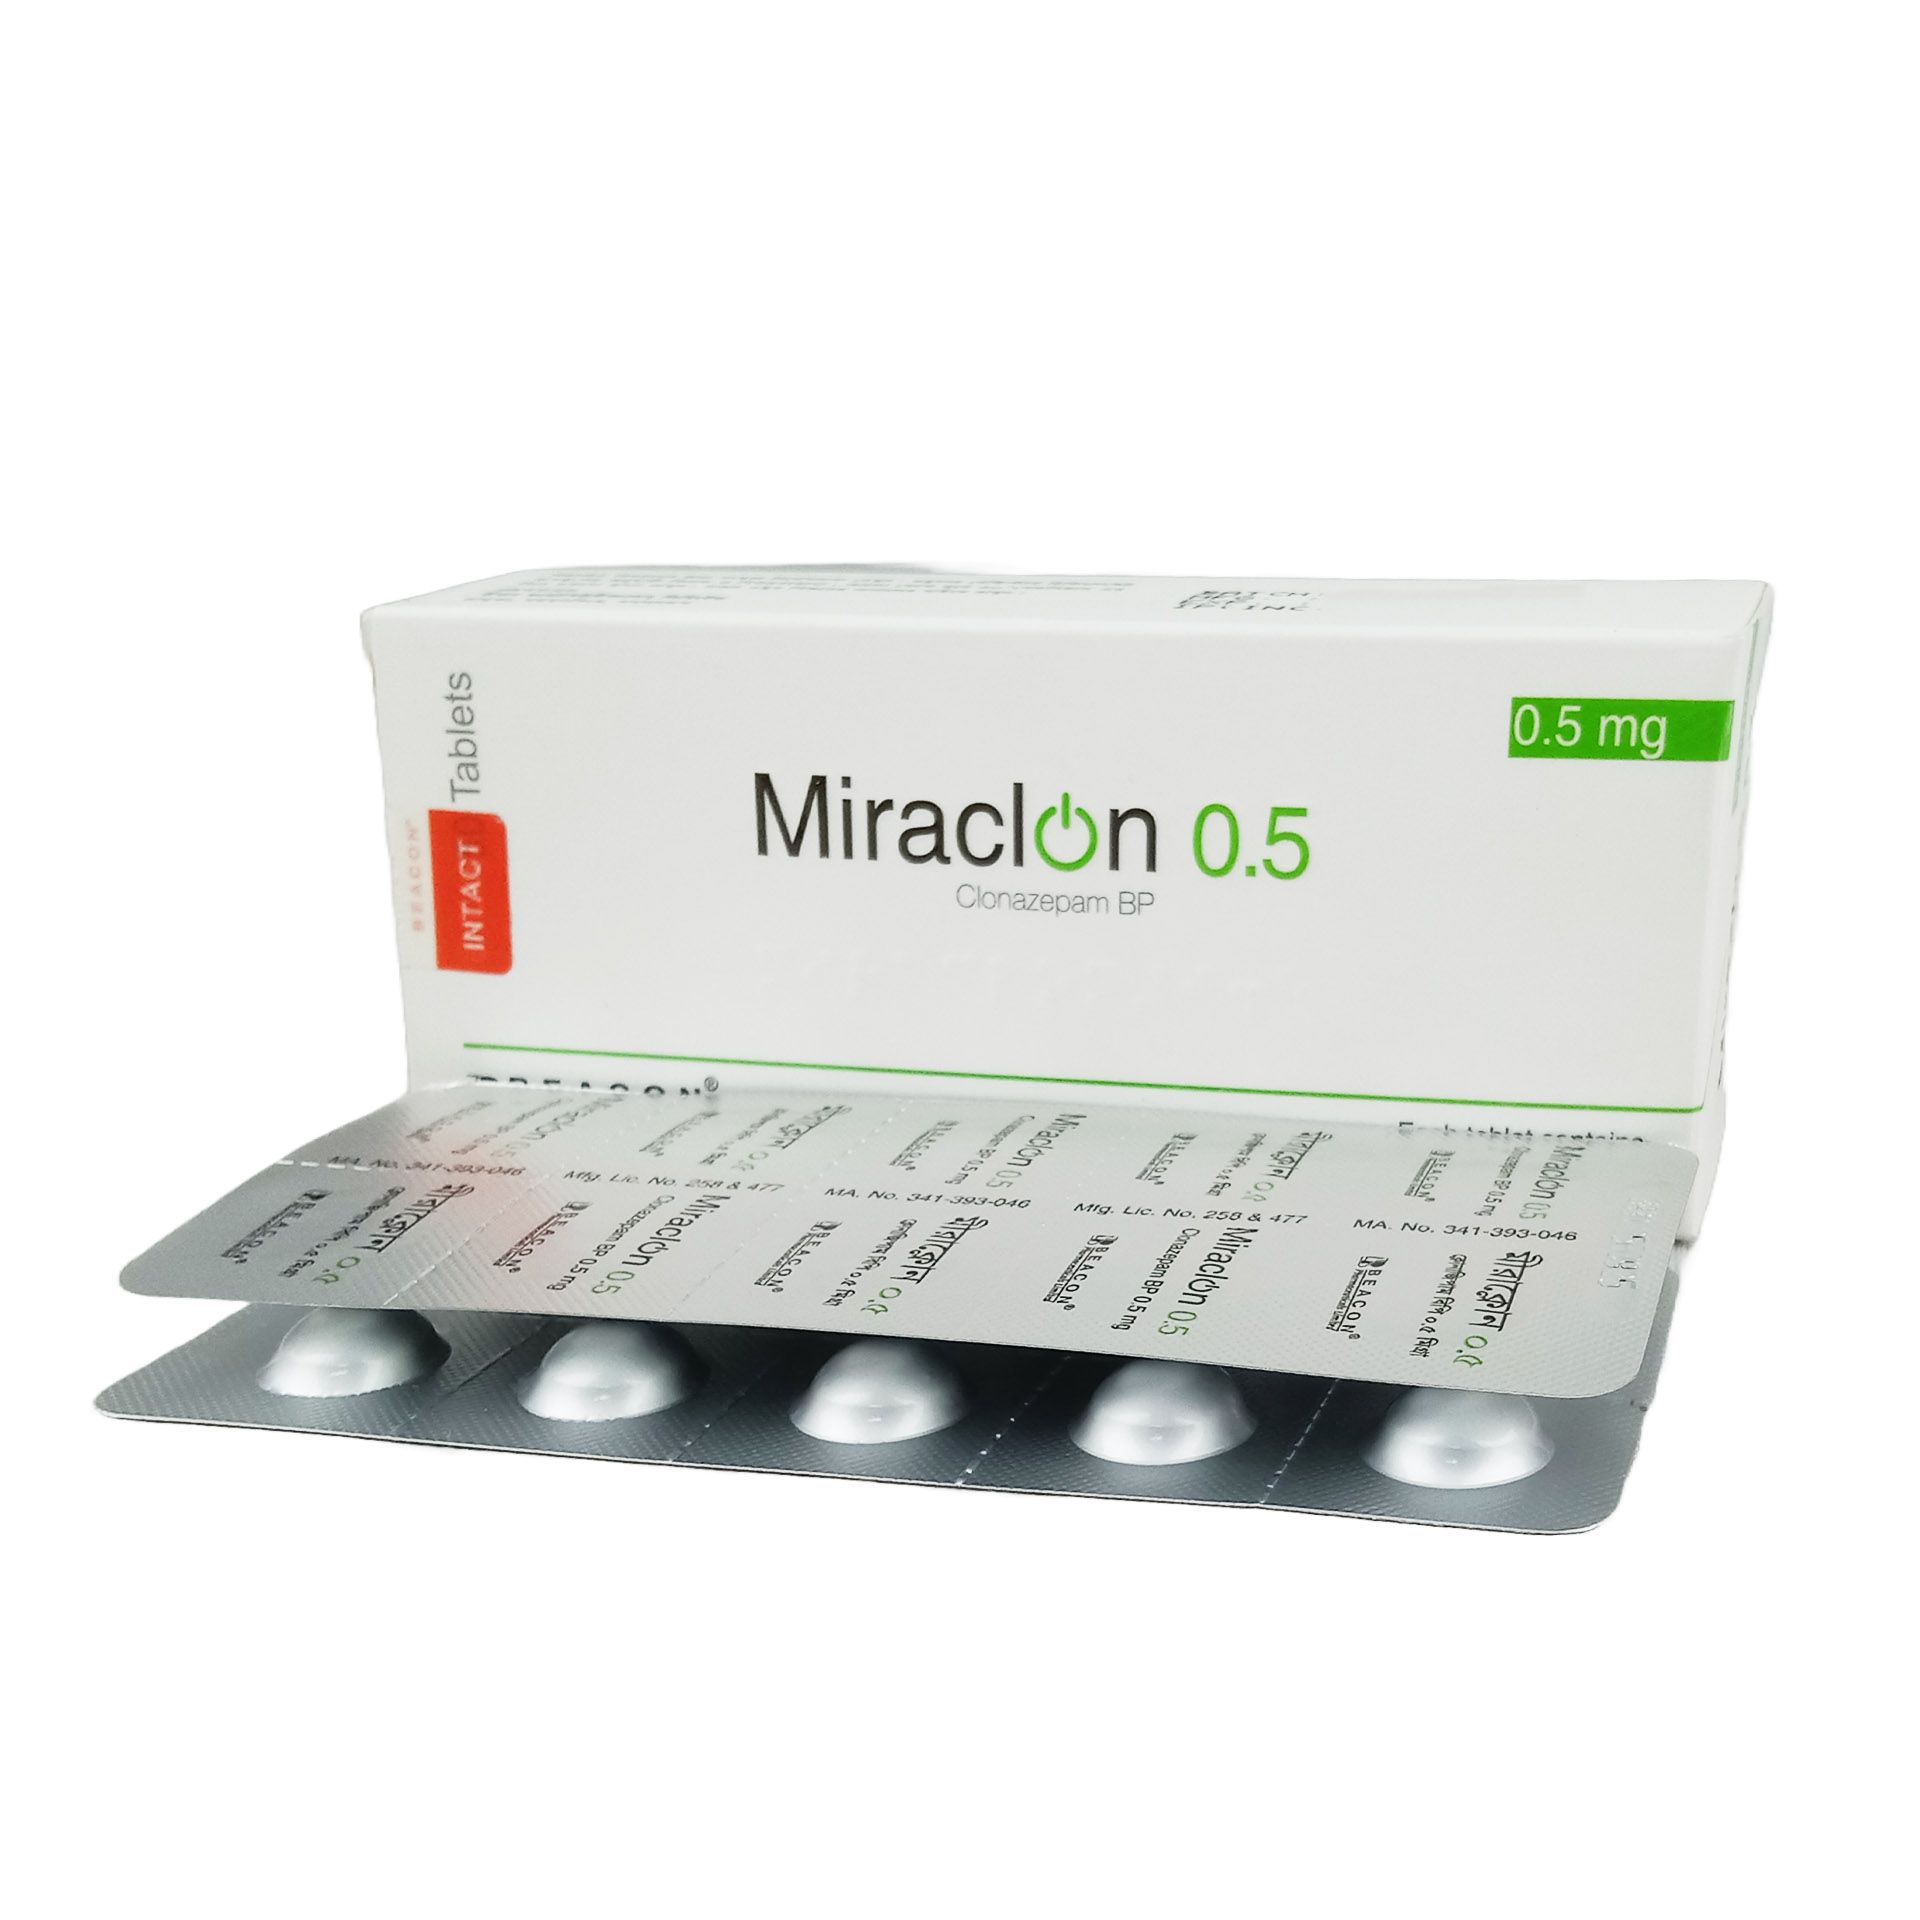 Miraclon 0.5 0.5mg Tablet